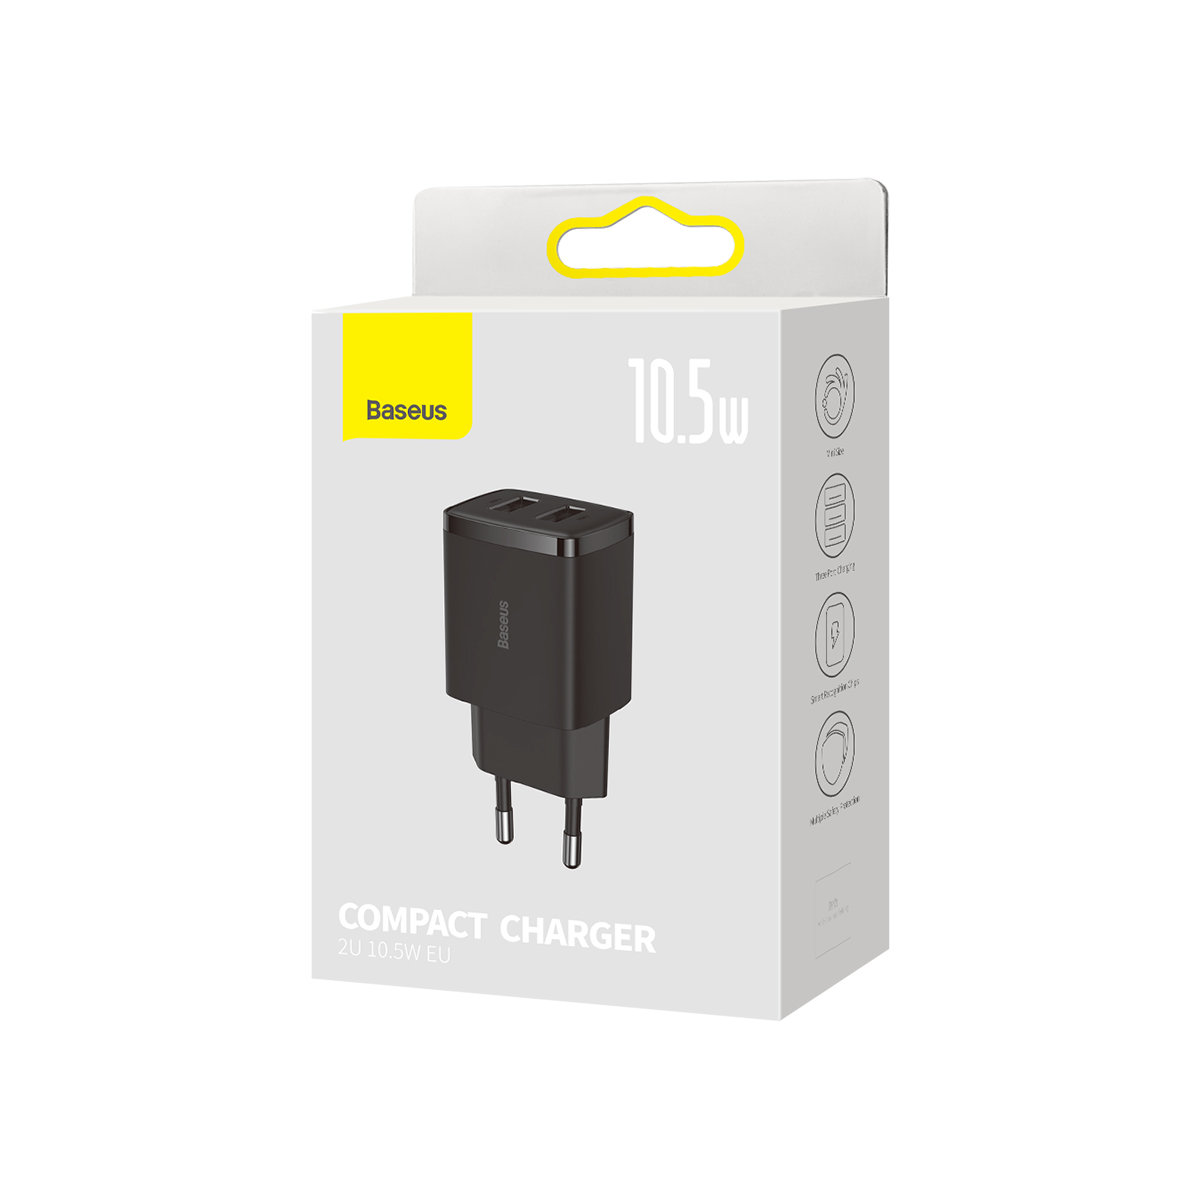 adowarka sieciowa Baseus Compact 2x USB 10.5W CCXJ010202 czarna LG V10 / 4